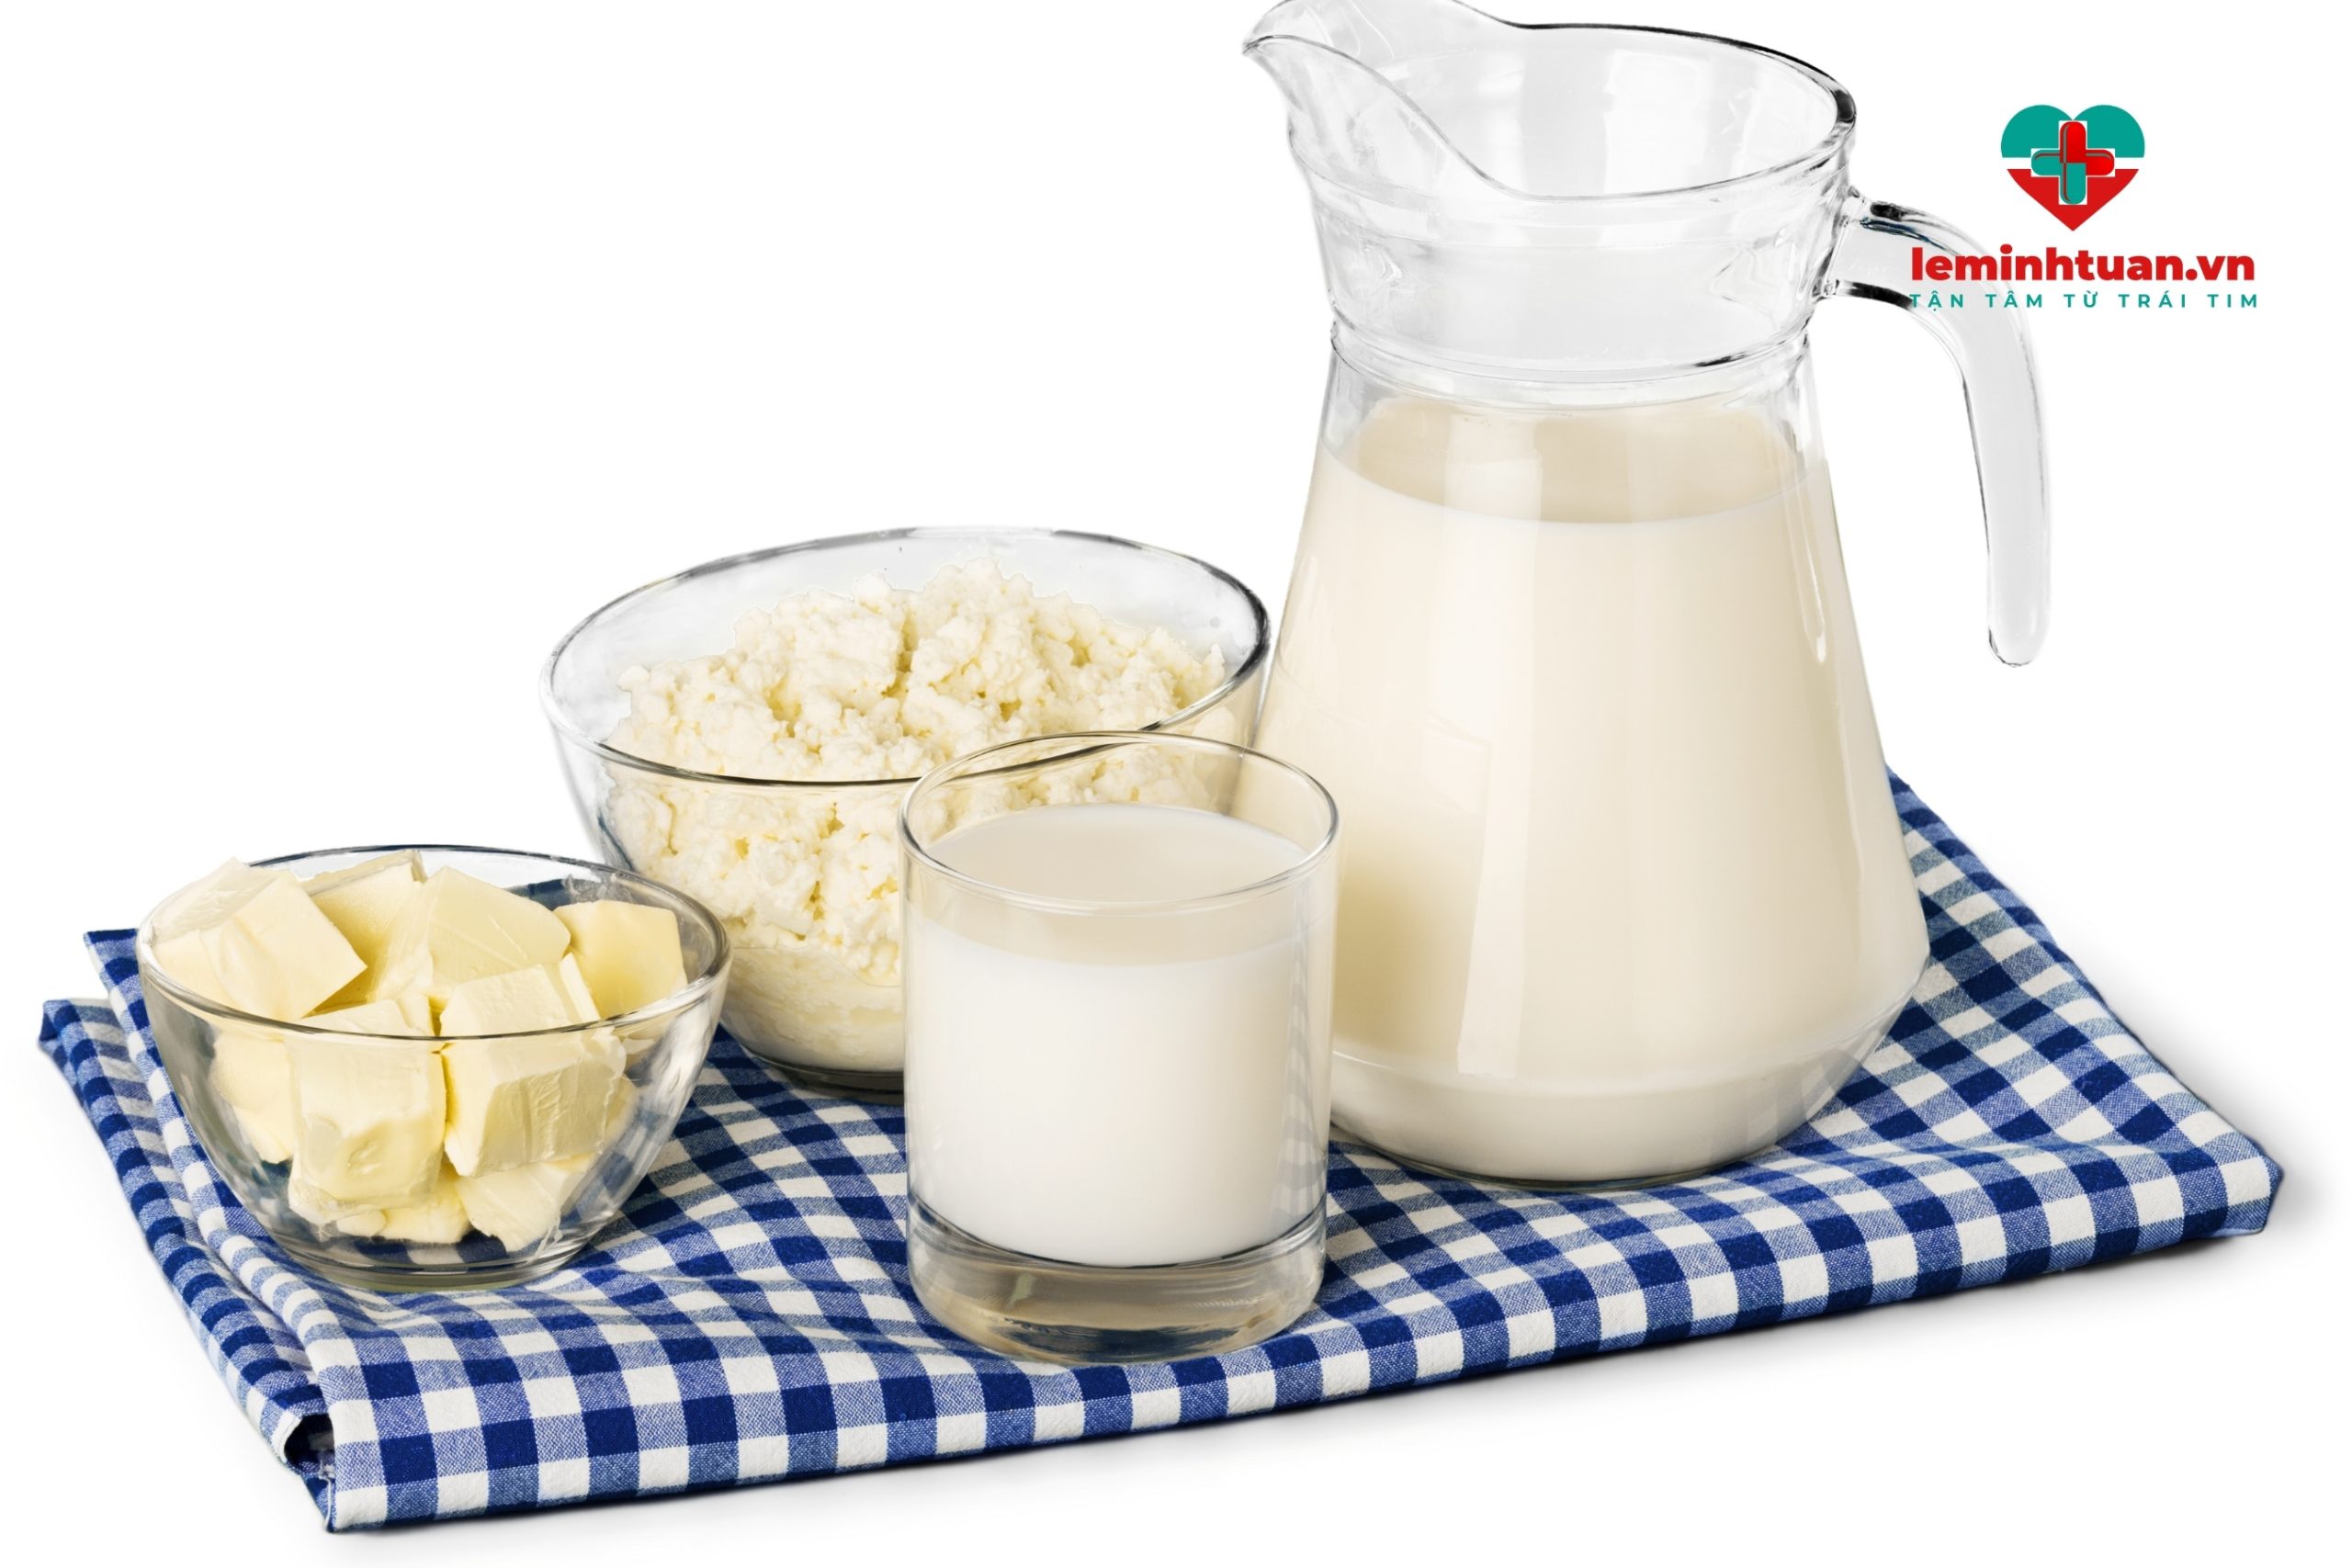 Sử dụng sữa hay các sản phẩm từ sữa - thực đơn tăng chiều cao cho trẻ